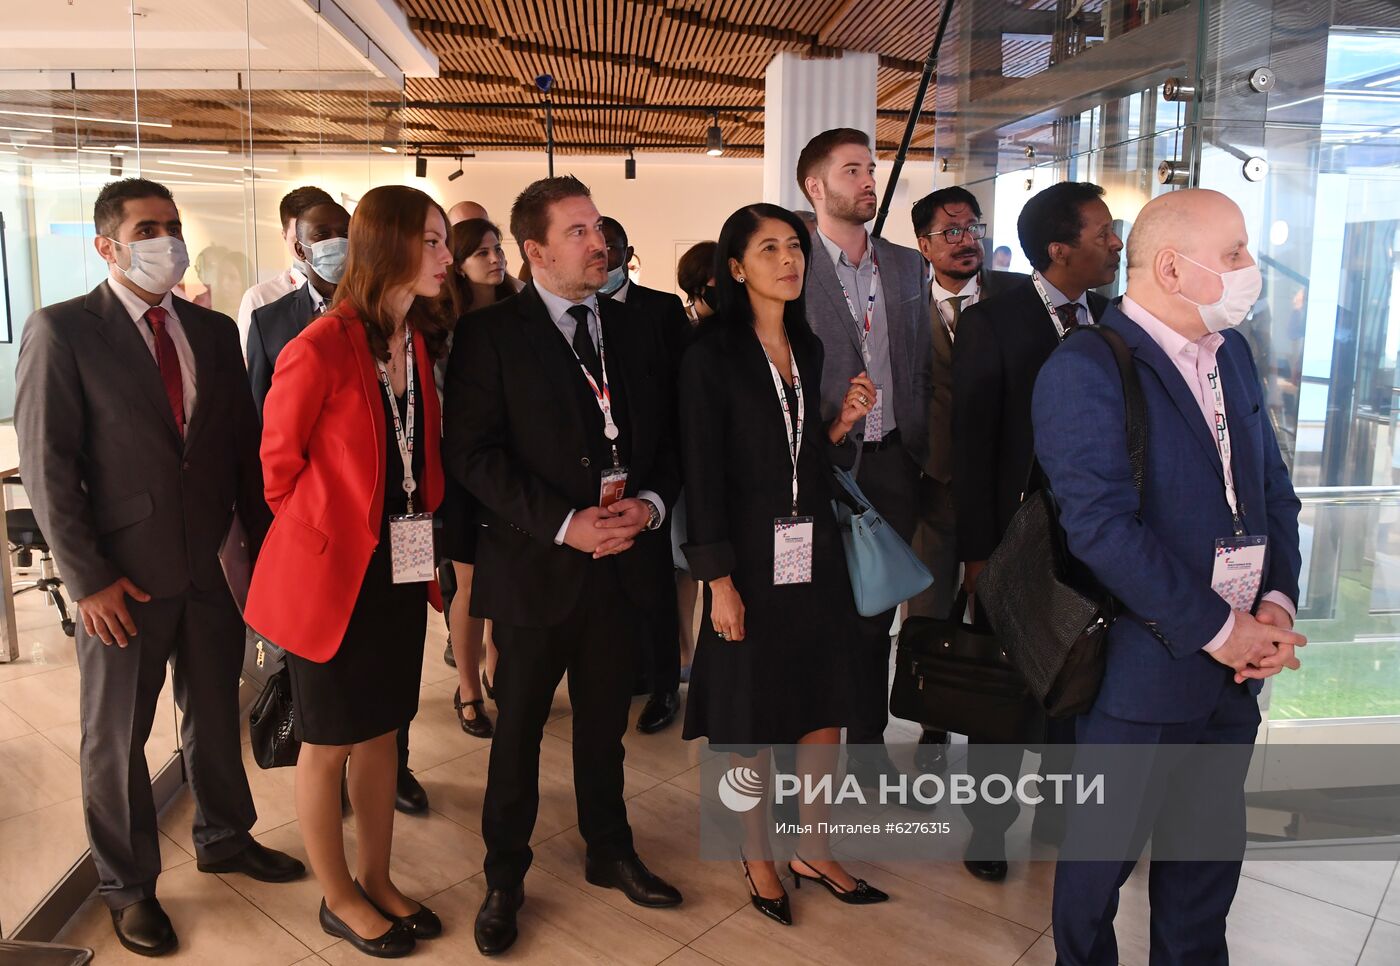 Международные наблюдатели посетили штаб по контролю и наблюдению за голосованием по поправкам в Конституцию РФ